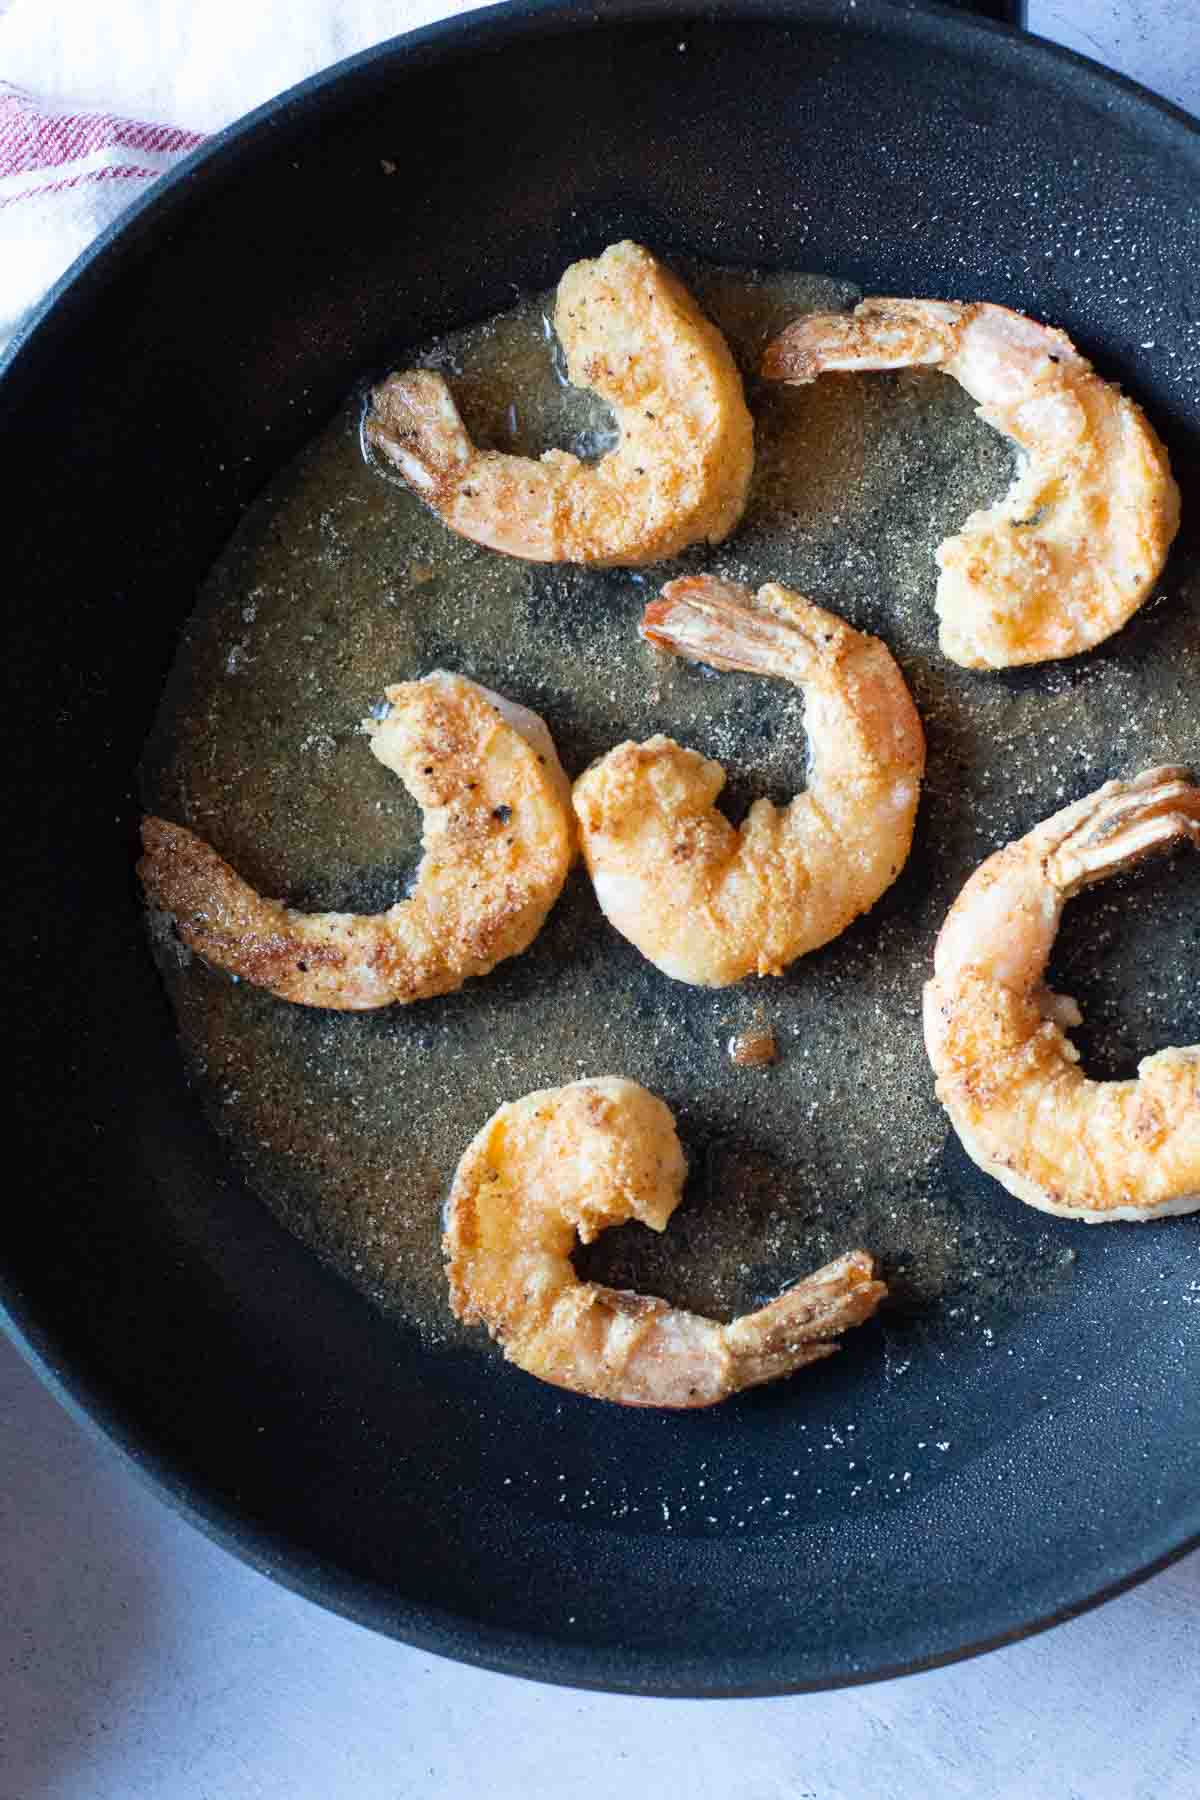 Frying shrimp to make shrimp remoulade.